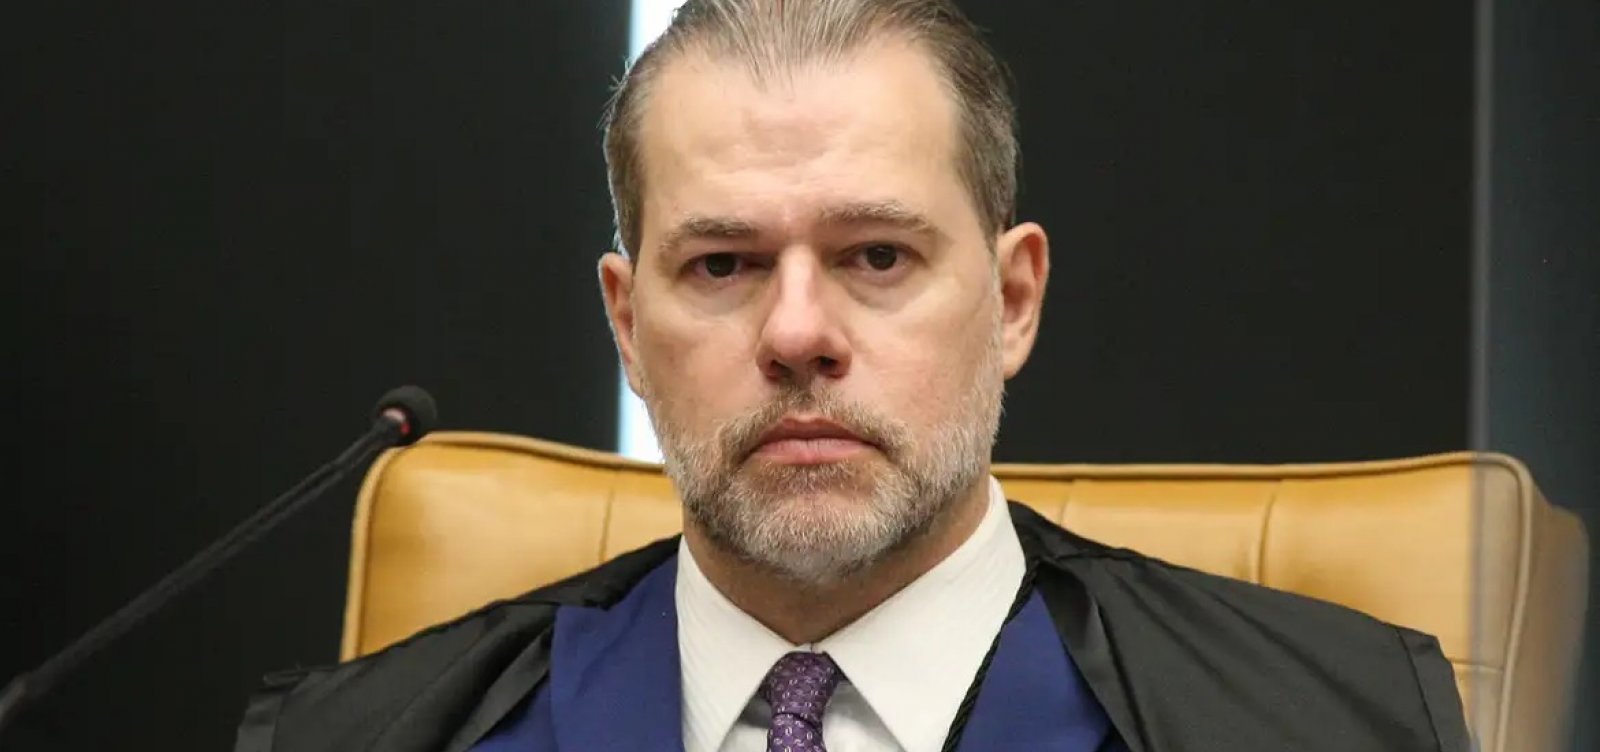 Ação sobre Marco Civil da Internet estará pronta para ser julgada até junho, diz Toffoli